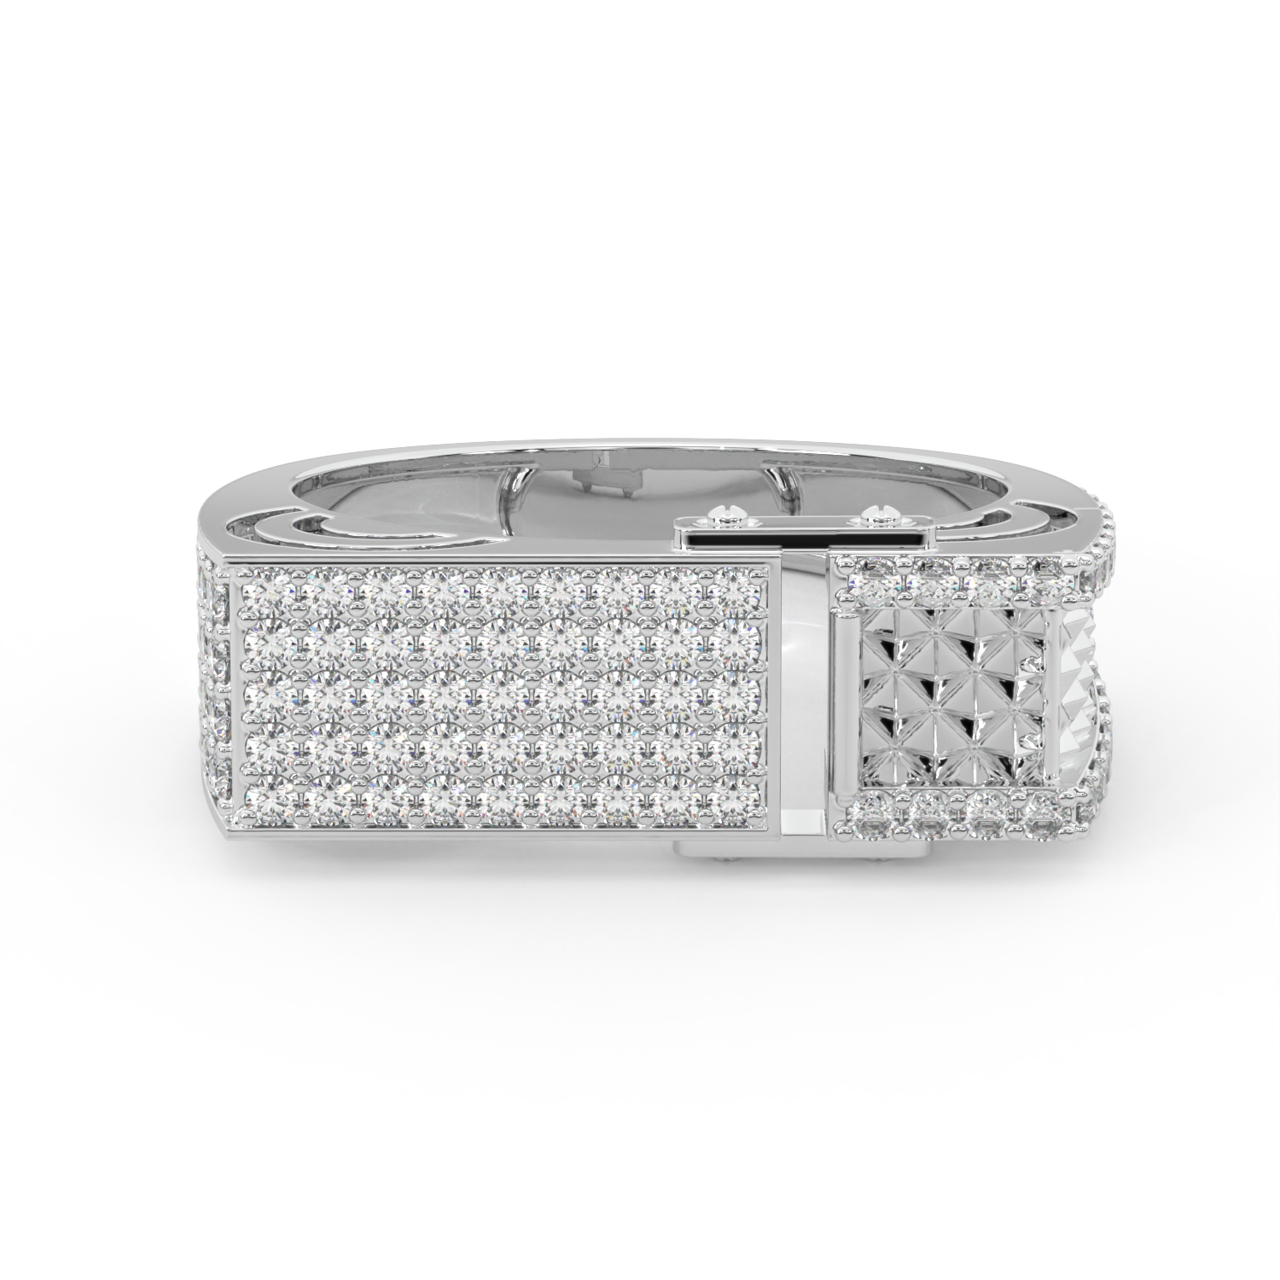 Lavish Diamond Ring For Men